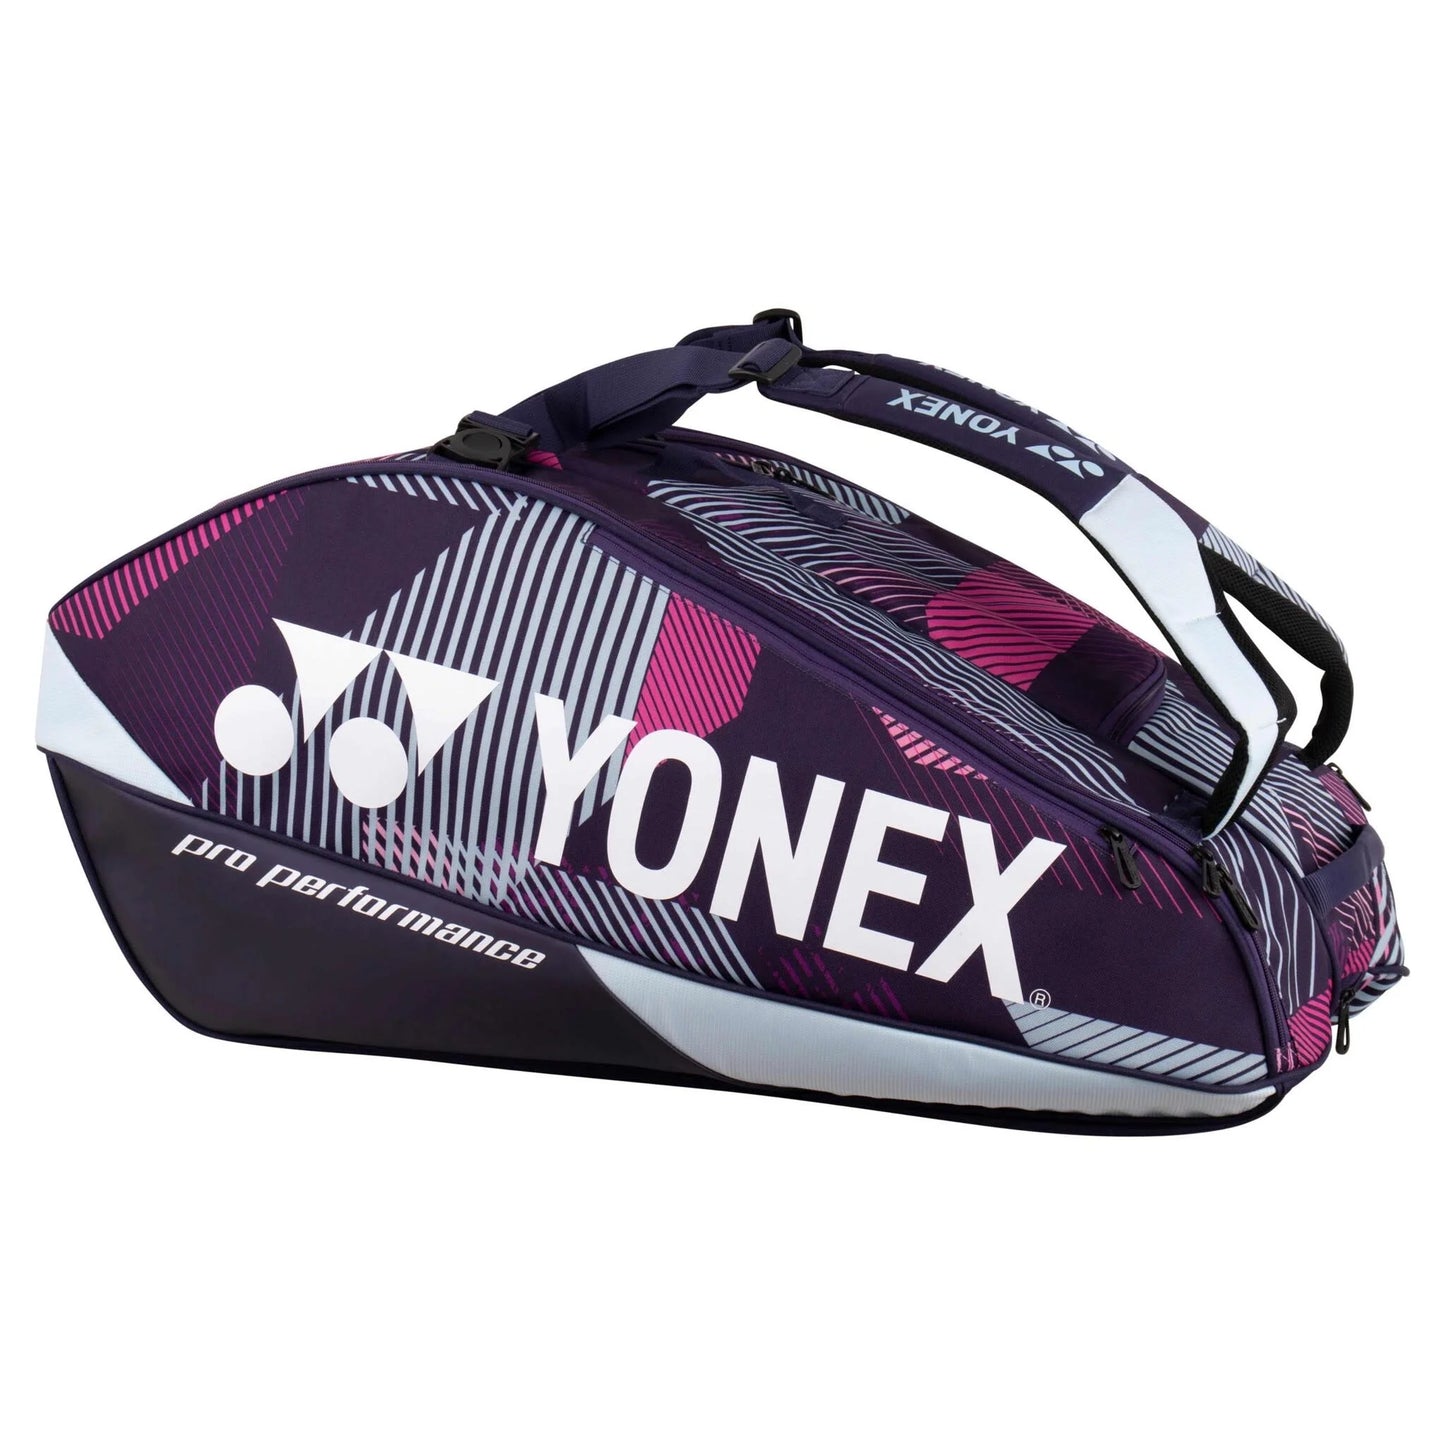 YONEX PRO RECQUET BAG